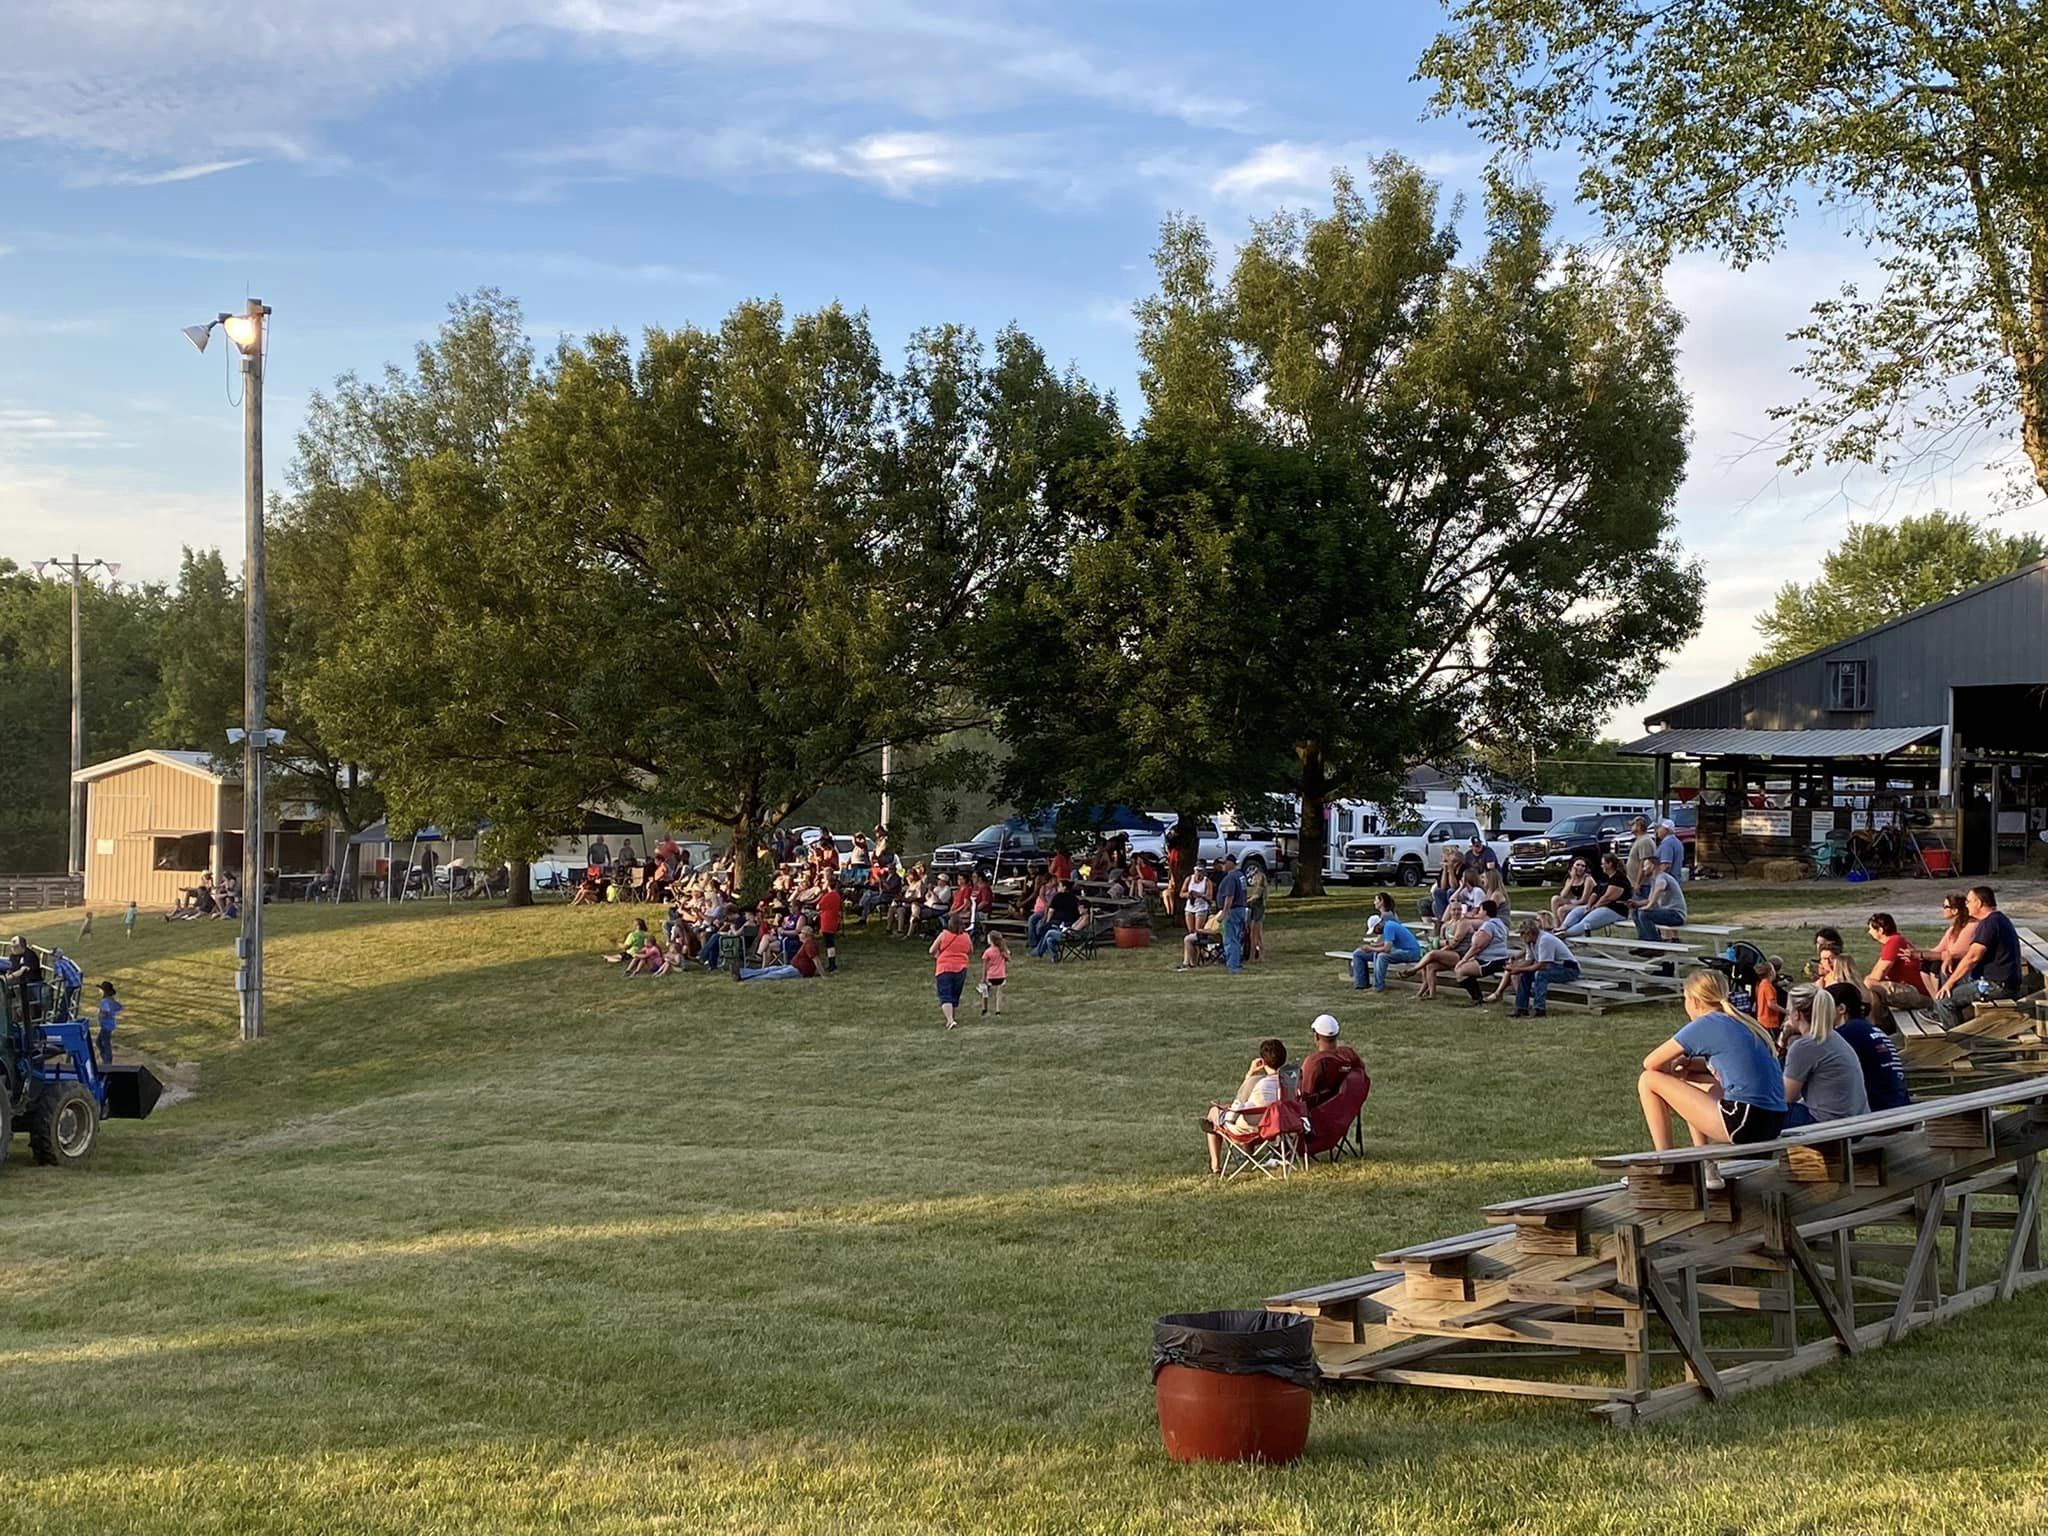 Fairgoers enjoy an evening at the Spencer County 4-H Fair